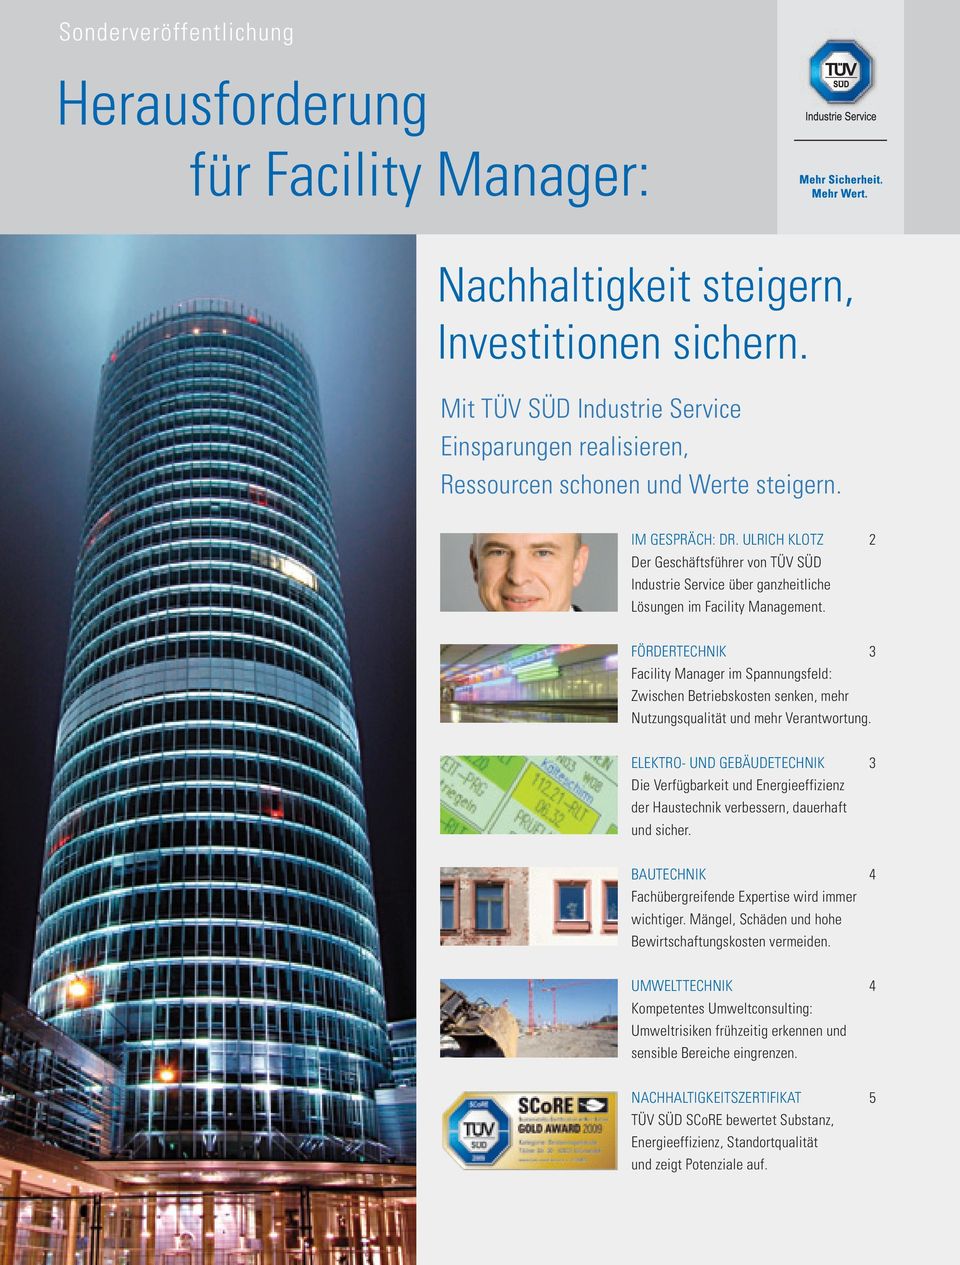 ULRICH KLOTZ 2 Der Geschäftsführer von TÜV SÜD Industrie Service über ganzheitliche Lösungen im Facility Management.